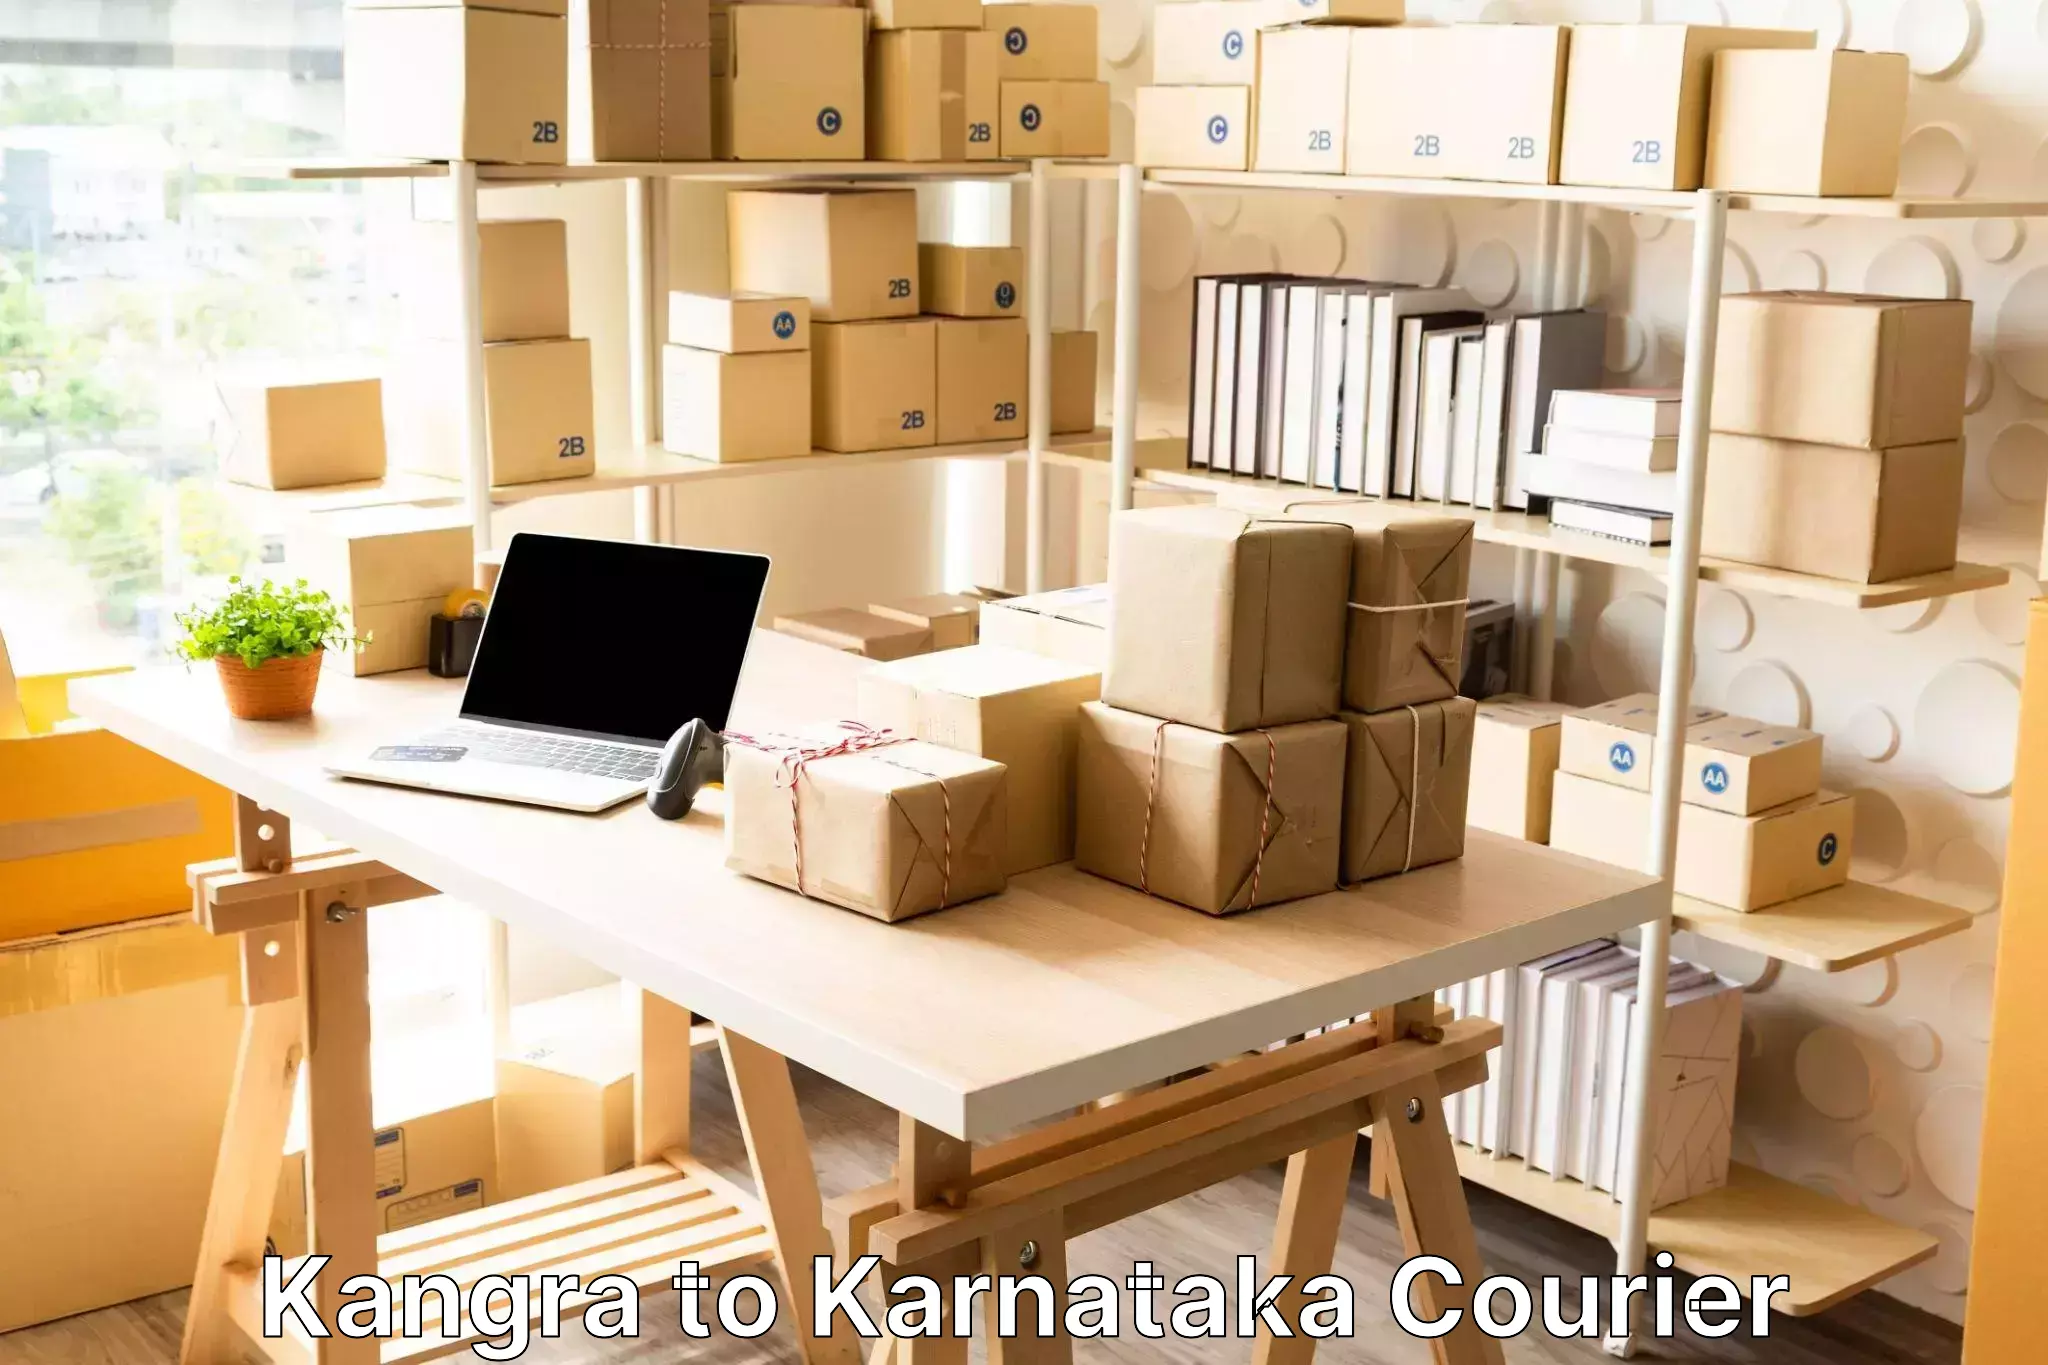 Luggage shipment strategy Kangra to Kanjarakatte